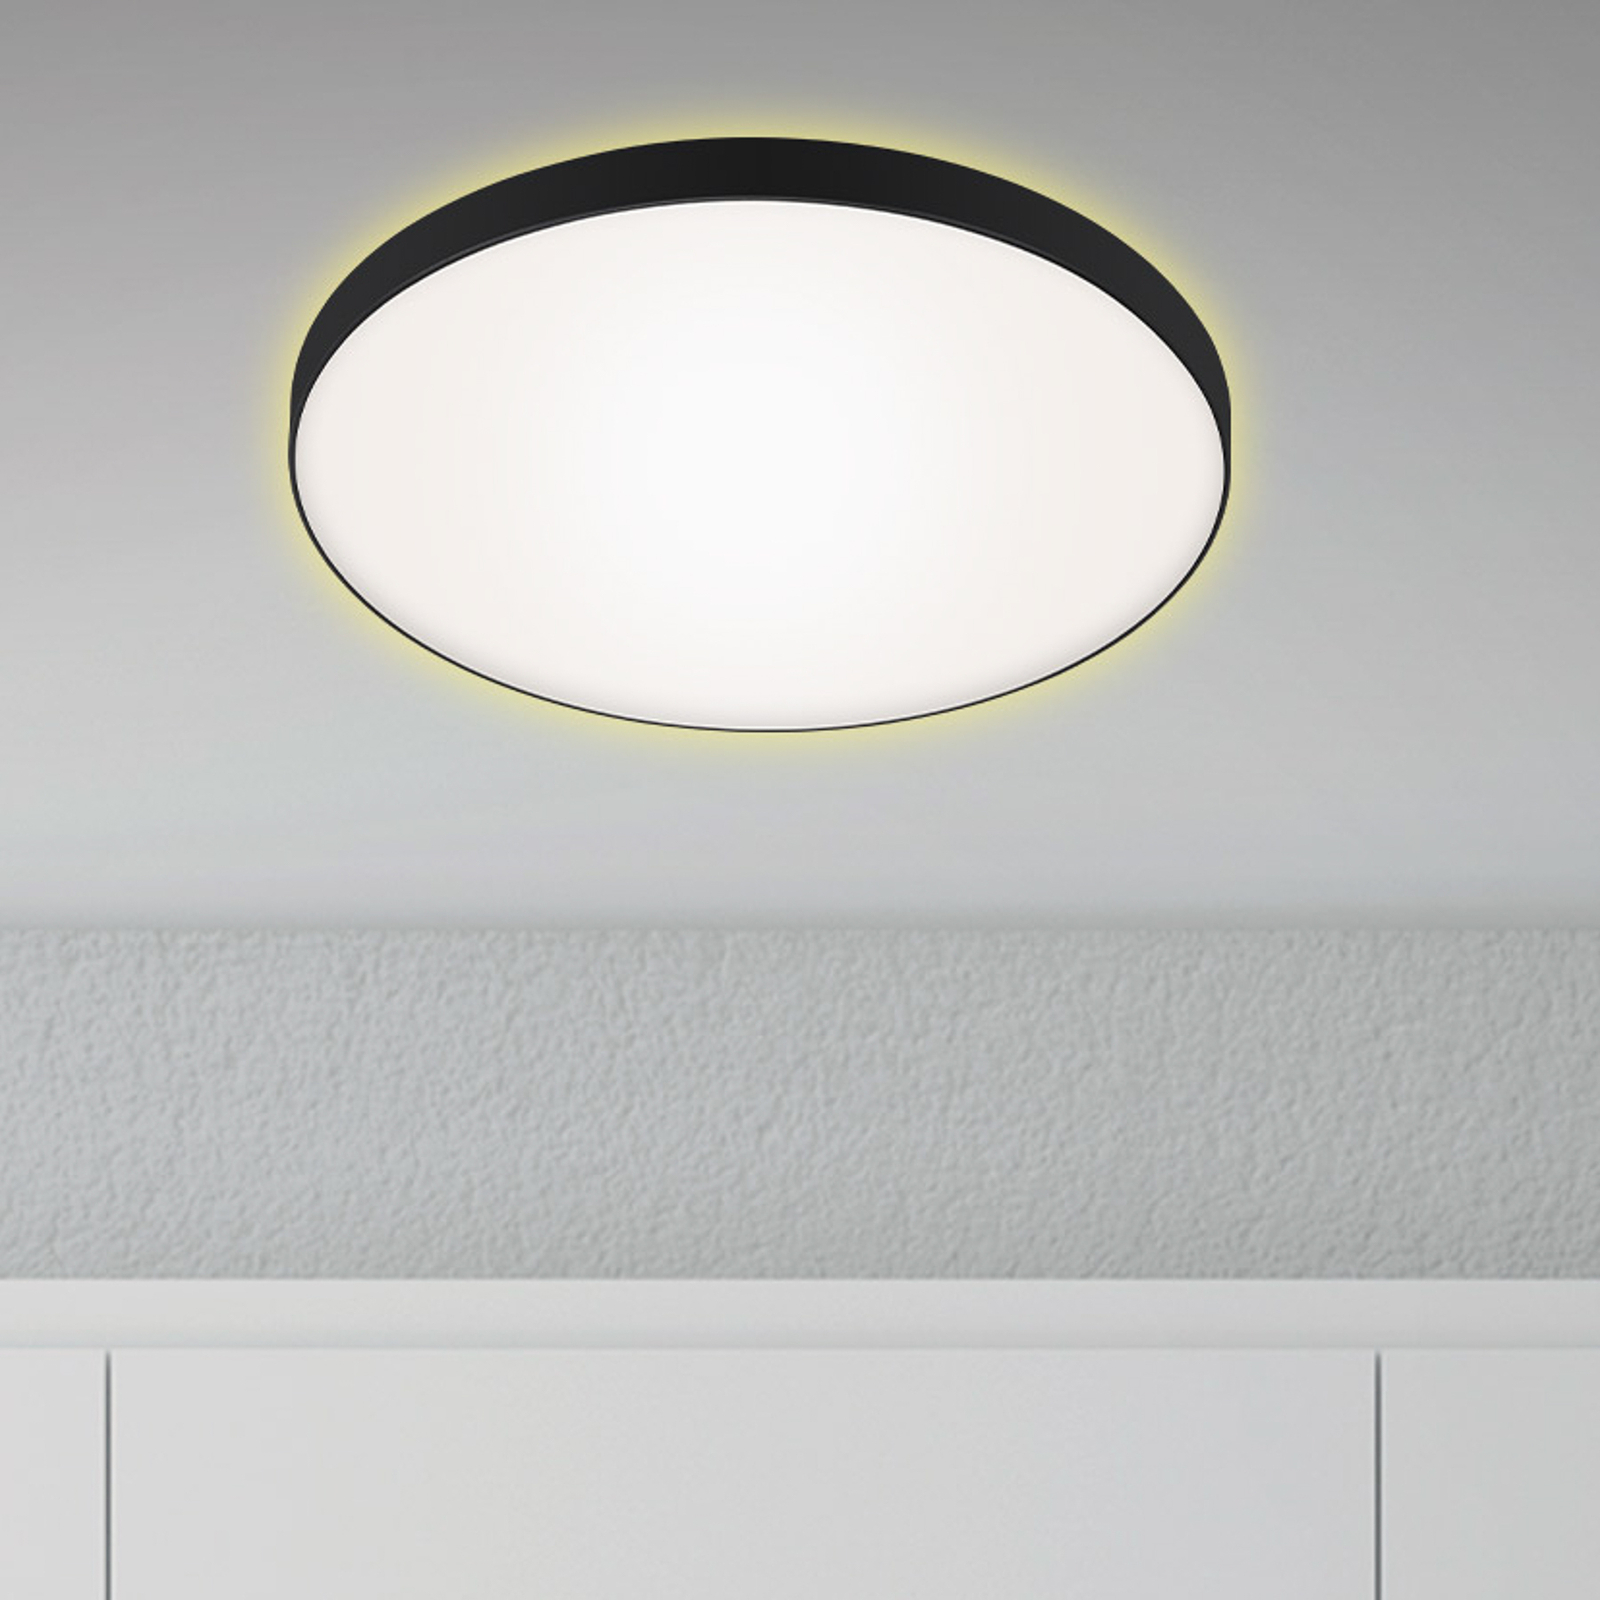 LED-taklampe Flet med bakgrunnsbelysning, Ø 35,5 cm